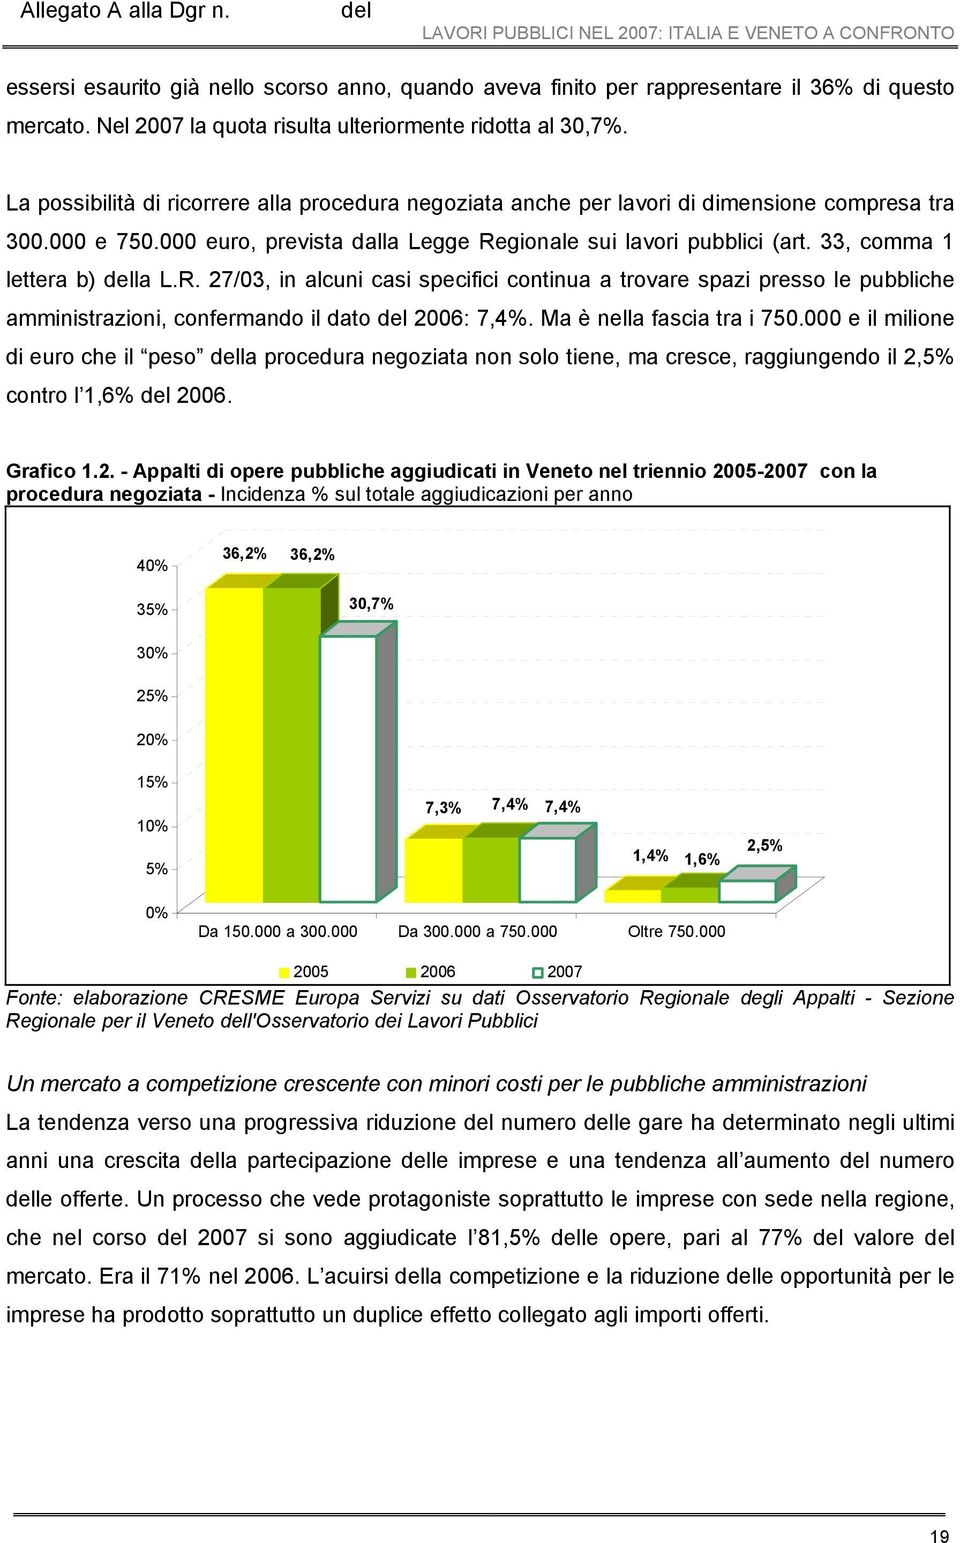 000 euro, prevista dalla Legge Regionale sui lavori pubblici (art. 33, comma 1 lettera b) la L.R. 27/03, in alcuni casi specifici continua a trovare spazi presso le pubbliche amministrazioni, confermando il dato 2006: 7,4%.